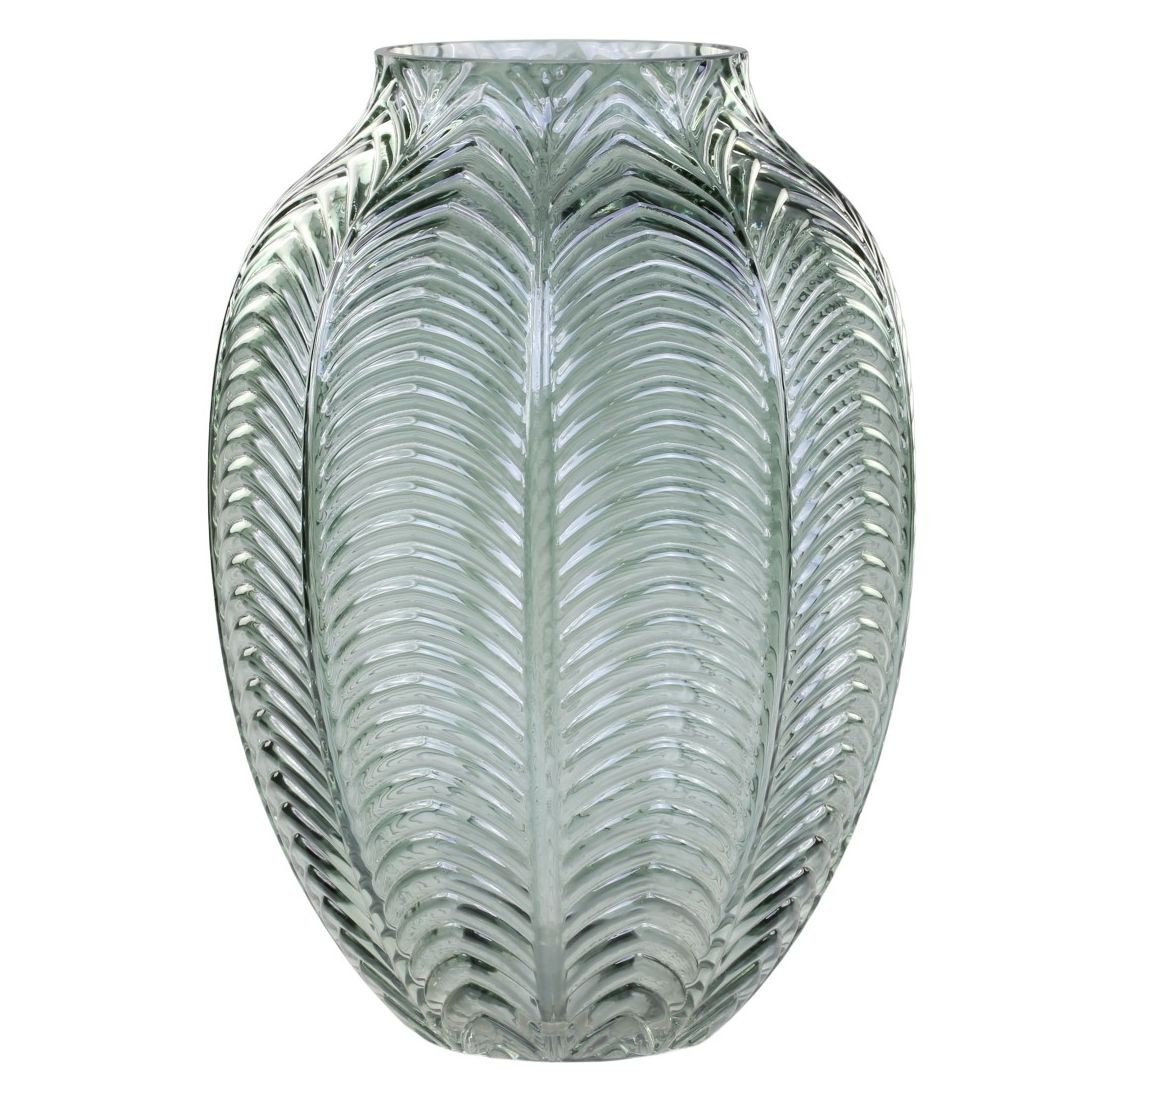 Zelená skleněná dekorační váza Leaf - Ø 18*25cm 74016221 (74162-21)